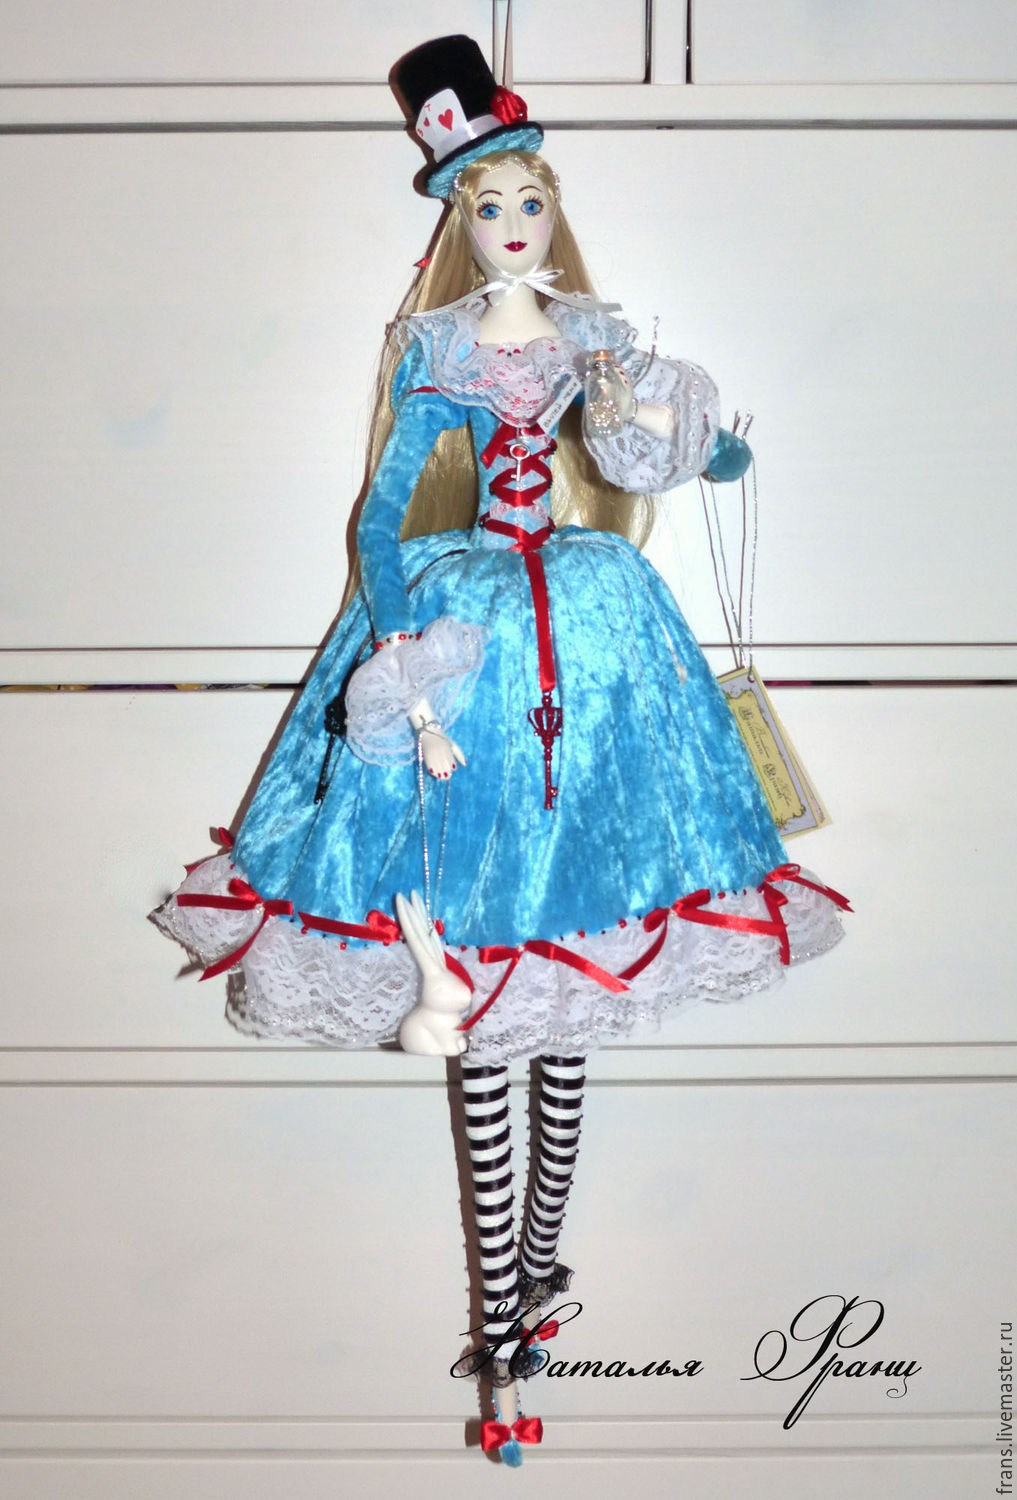 Porcelain doll Alice in Wonderland handmade